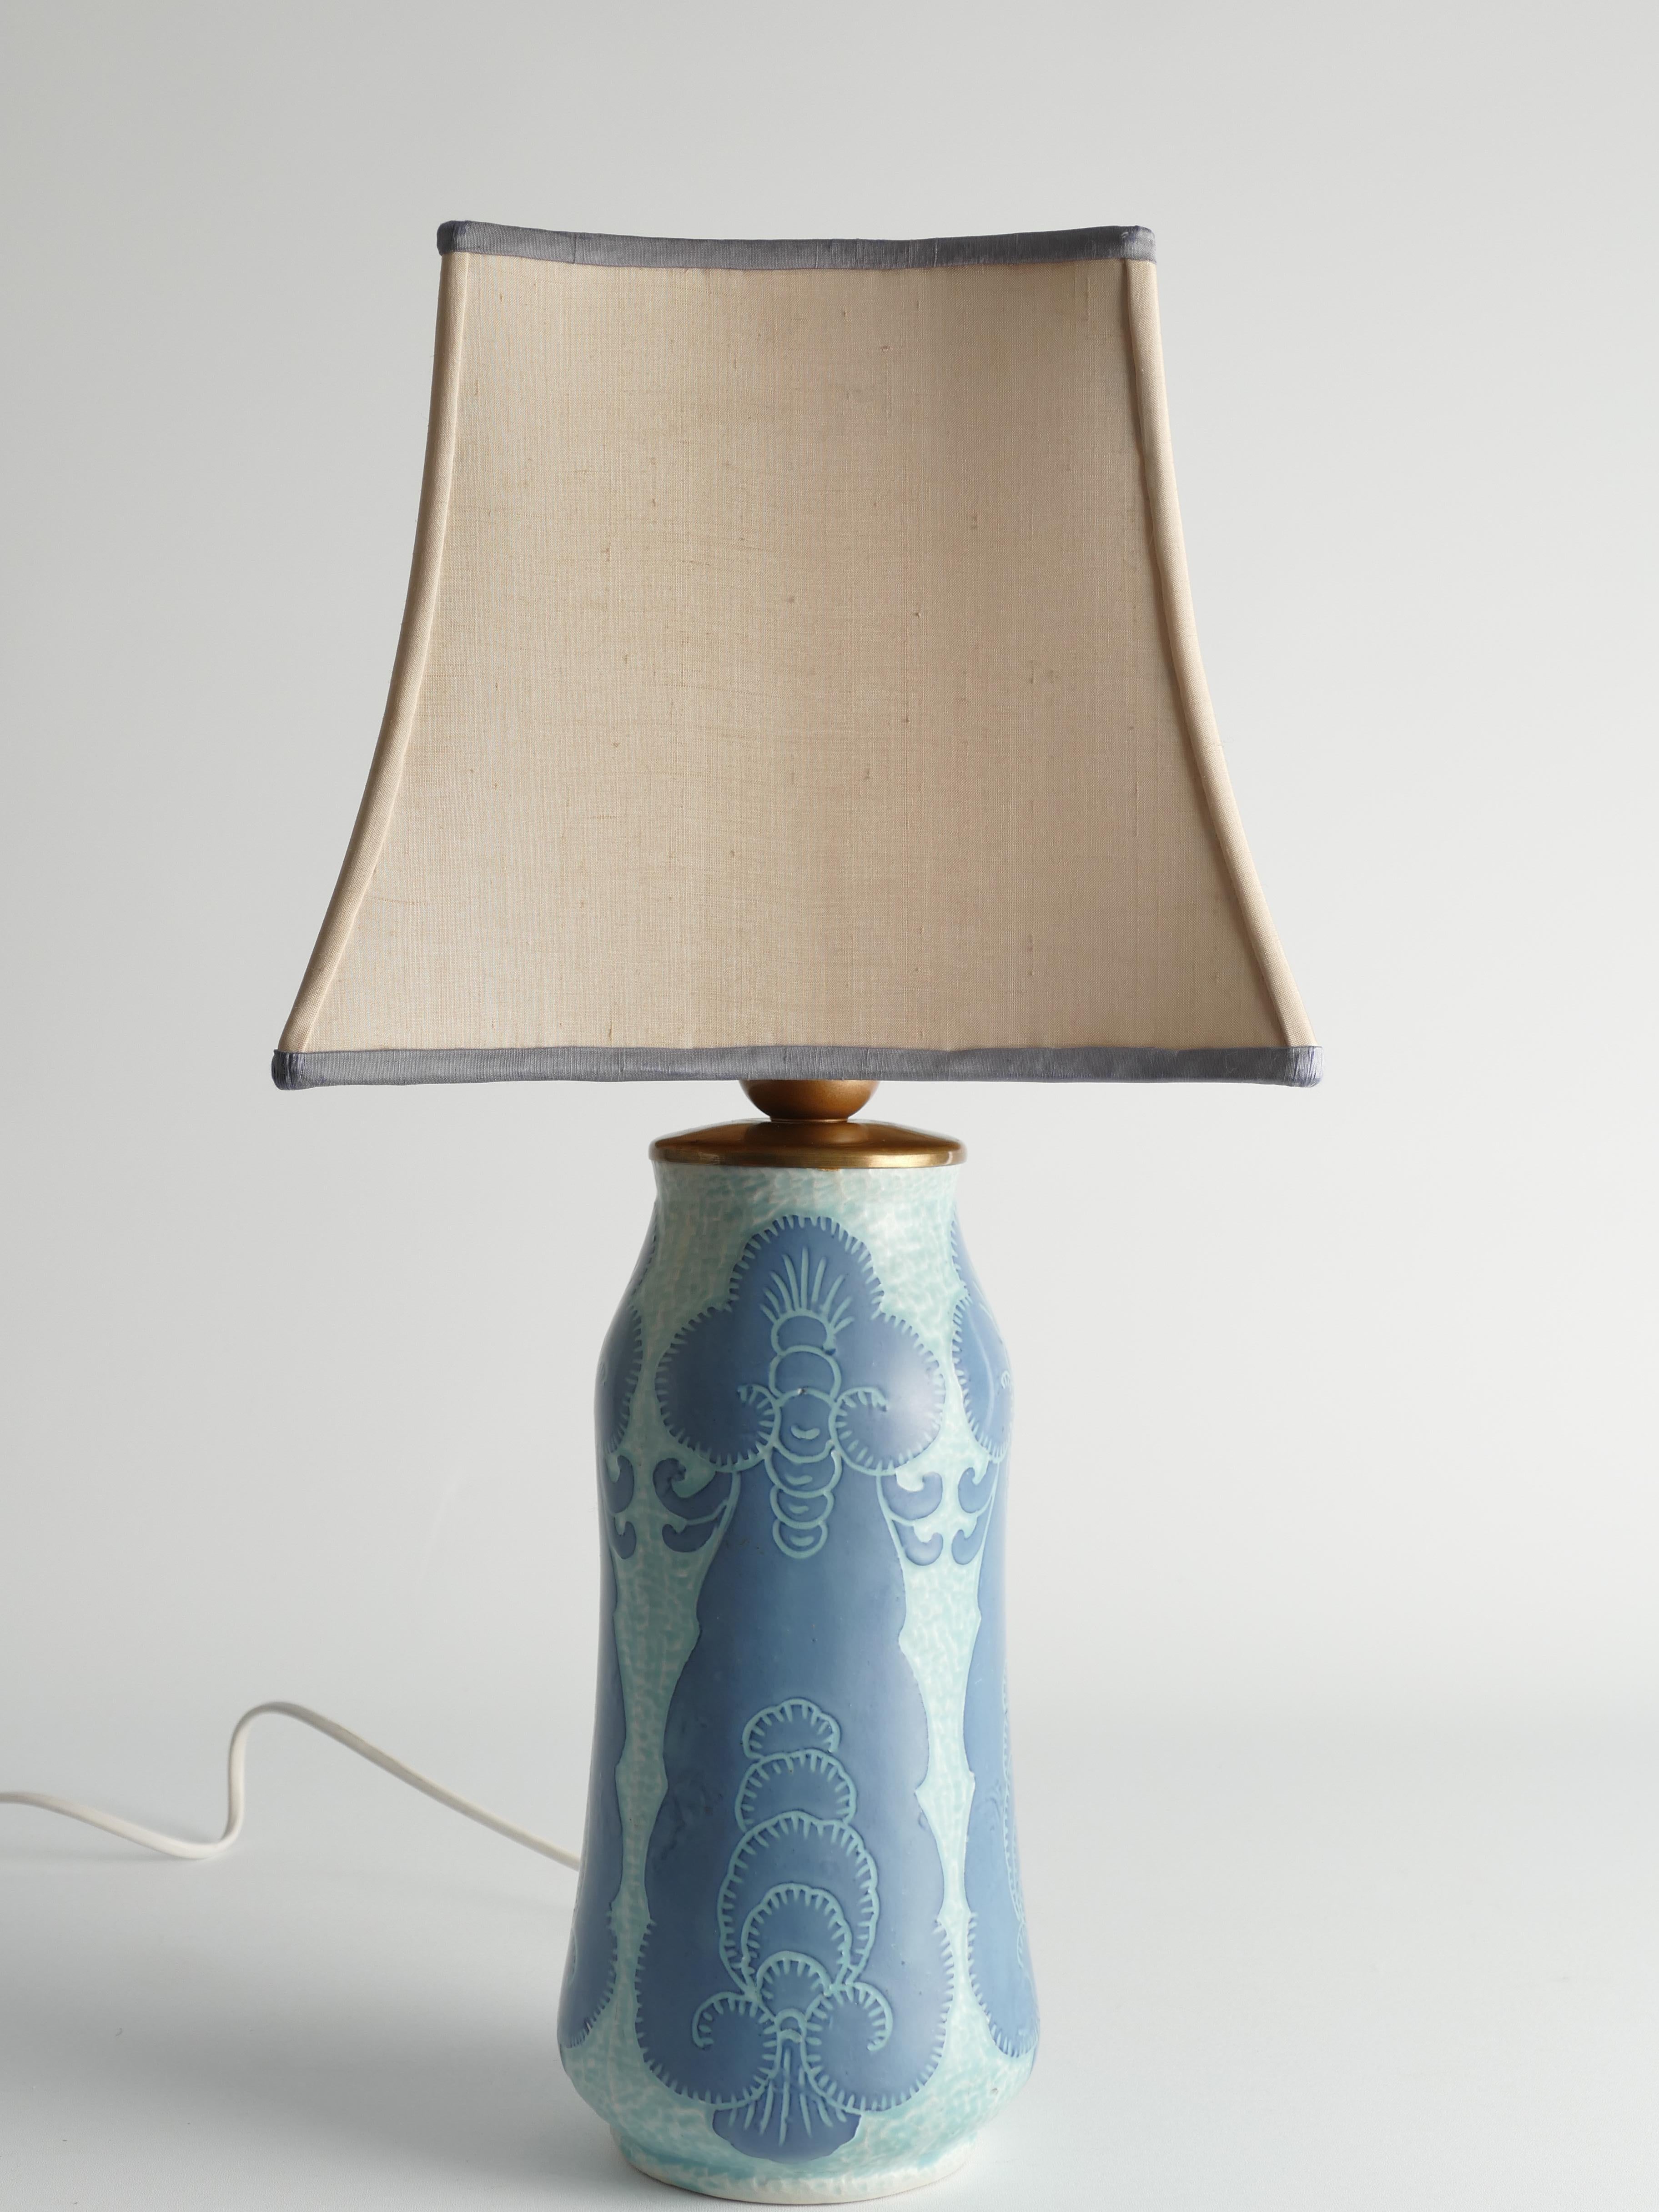 Unique Art Nouveau Pale Blue Ceramic Table Lamp by Josef Ekberg for Gustavsberg For Sale 1